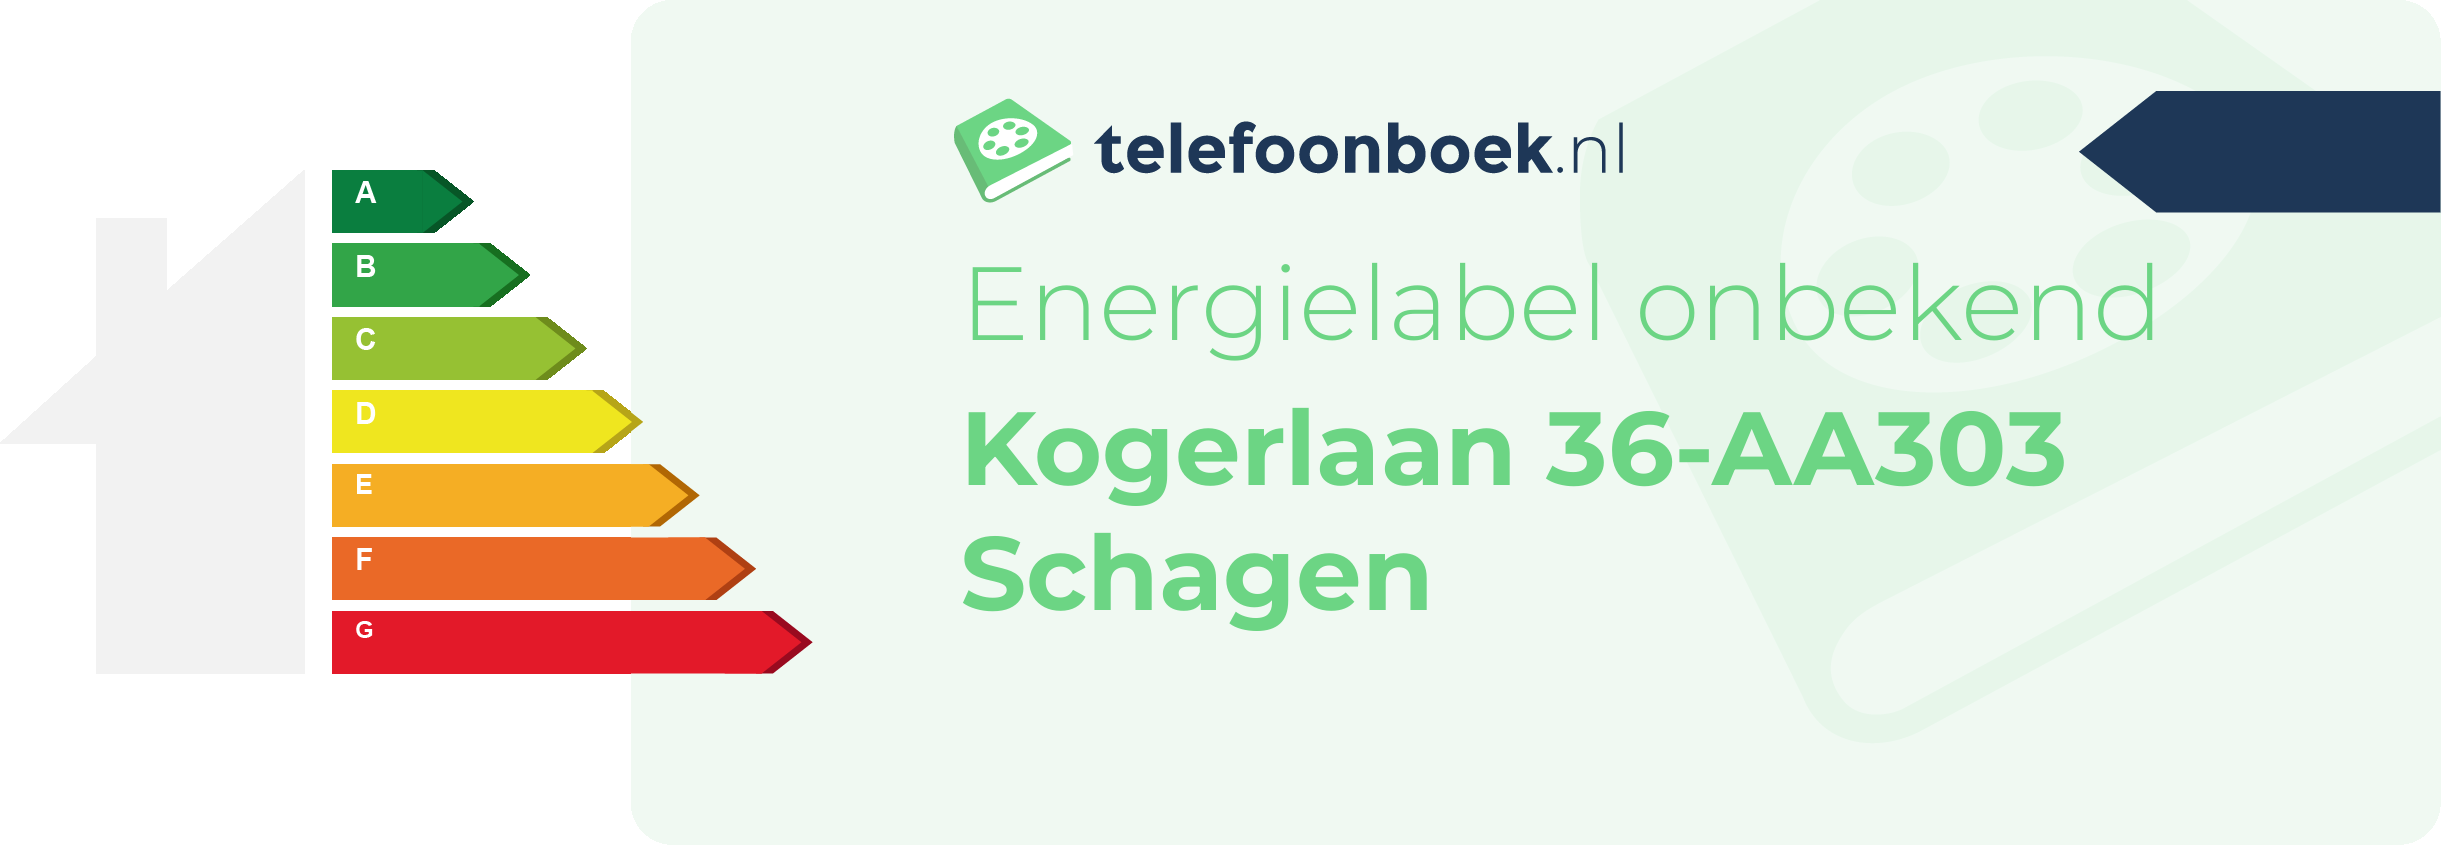 Energielabel Kogerlaan 36-AA303 Schagen